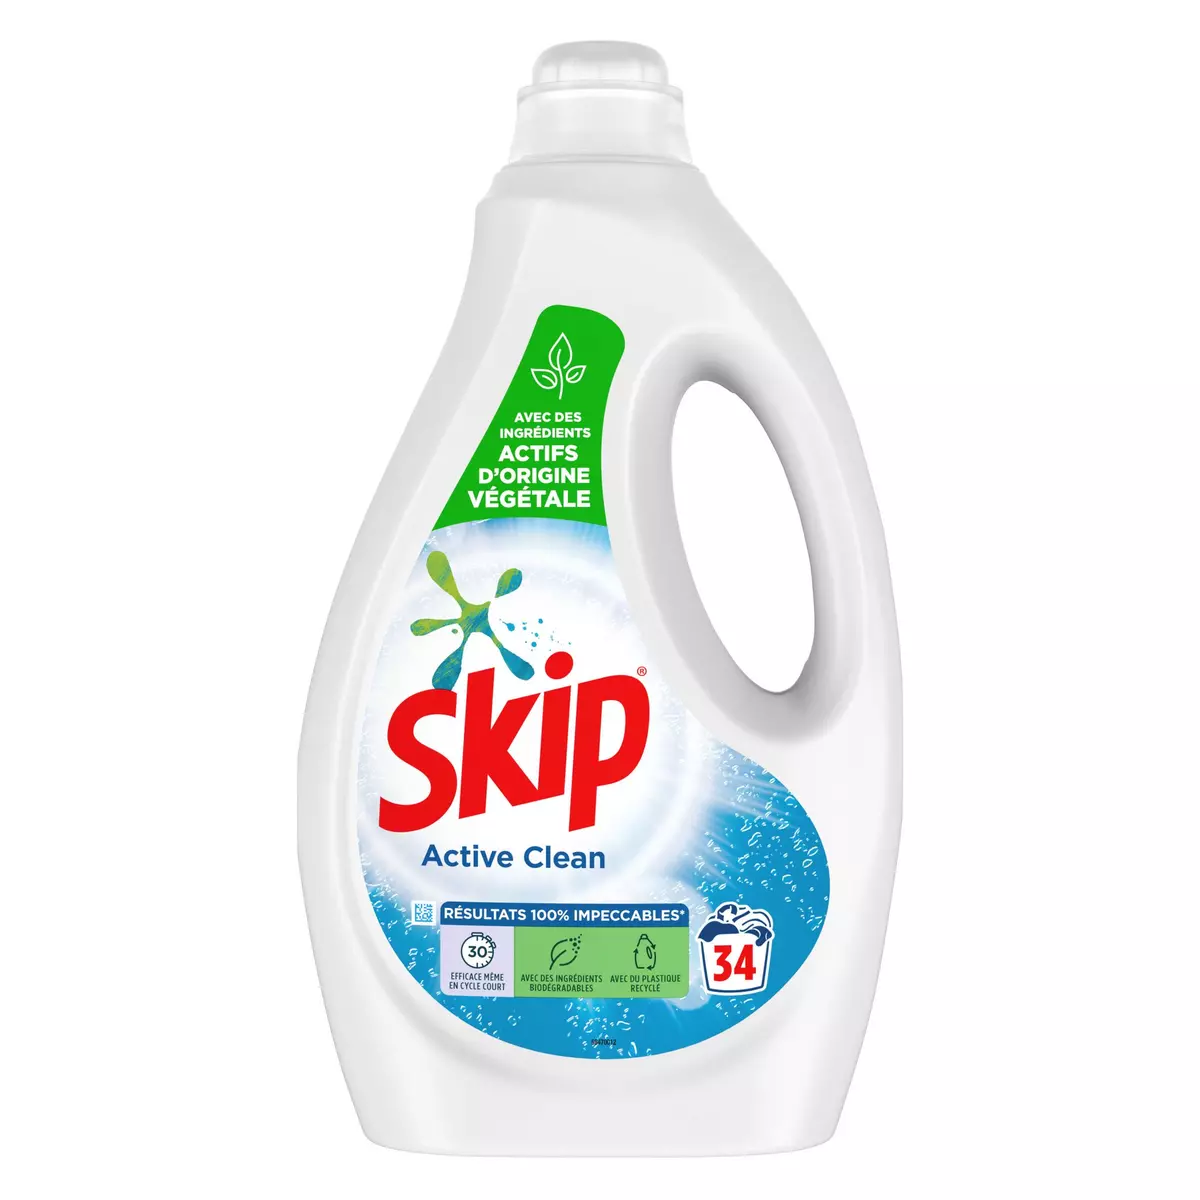 SKIP Skip Lessive liquide sensitive 36 lavages 1,8l 36 lavages 1